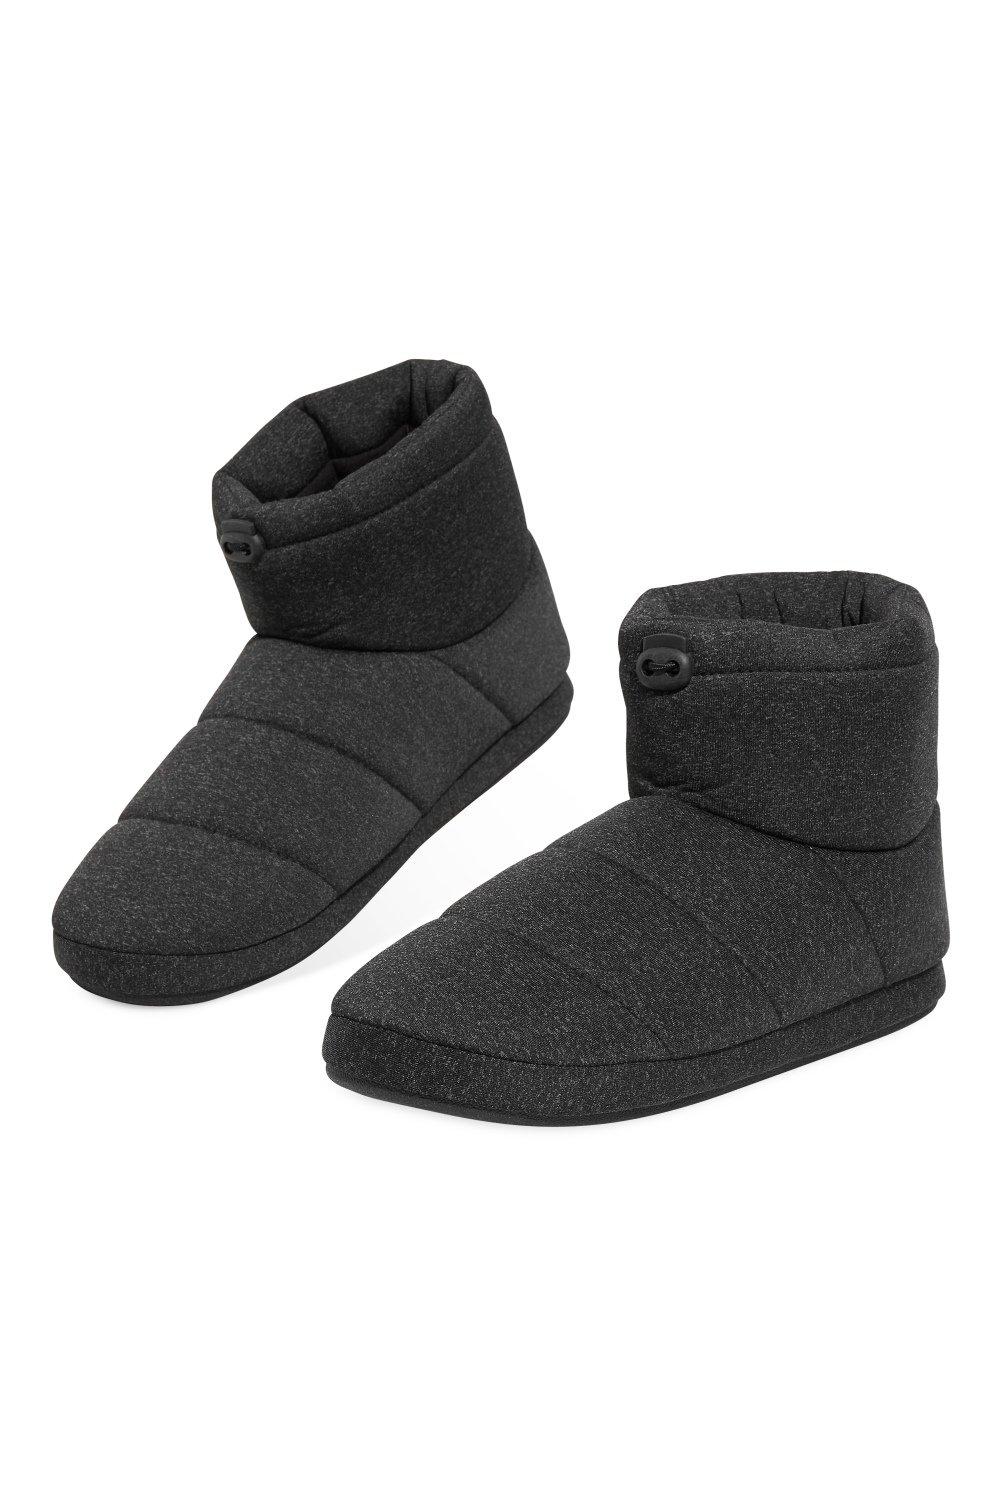 Тапочки-сапожки Dunlop, серый хуг вероника модные домашние тапочки теплые и уютные модели